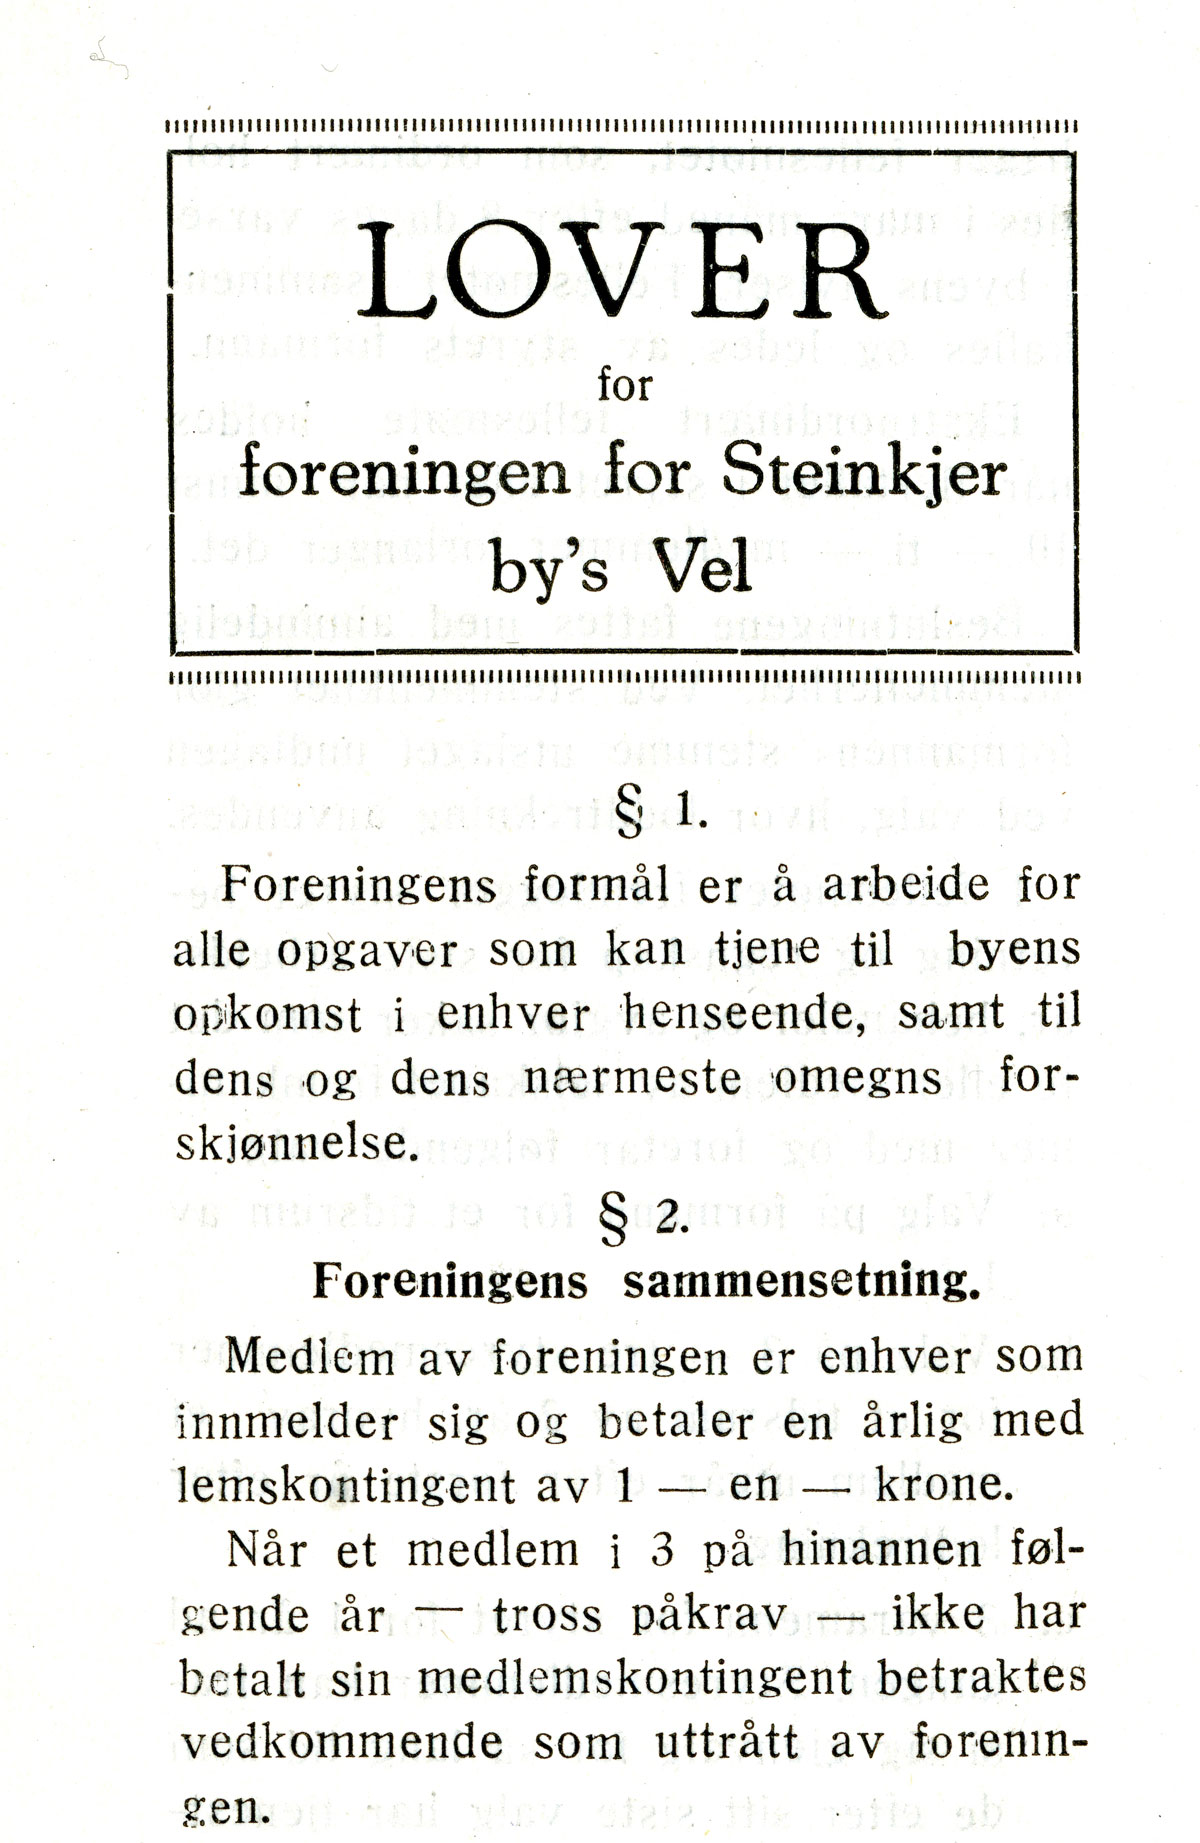 Steinkjer Bys Vel - lover